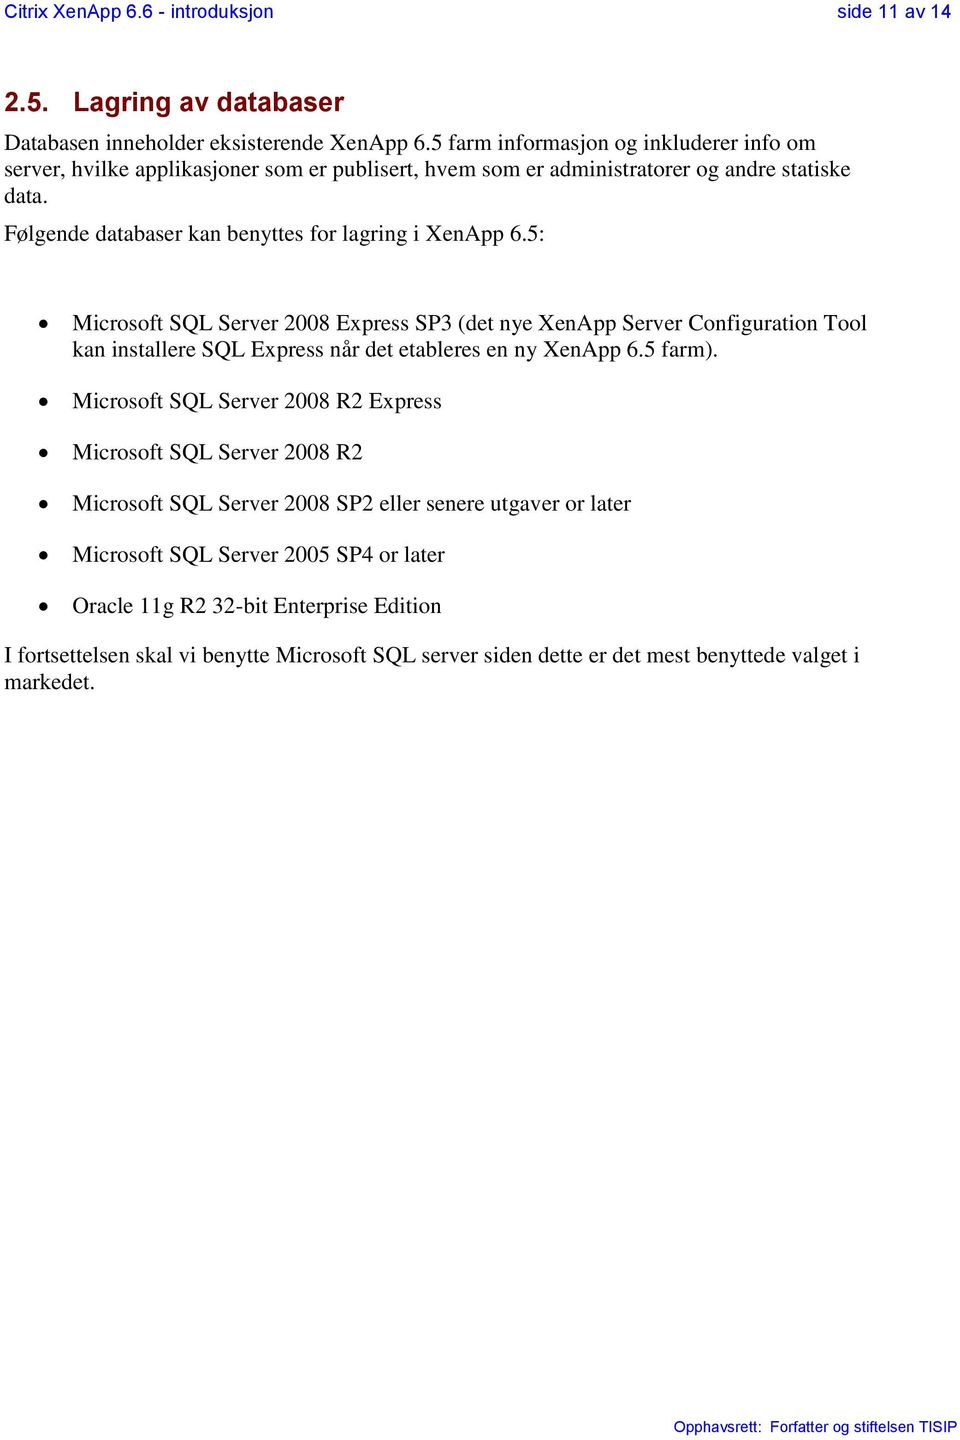 Følgende databaser kan benyttes for lagring i XenApp 6.